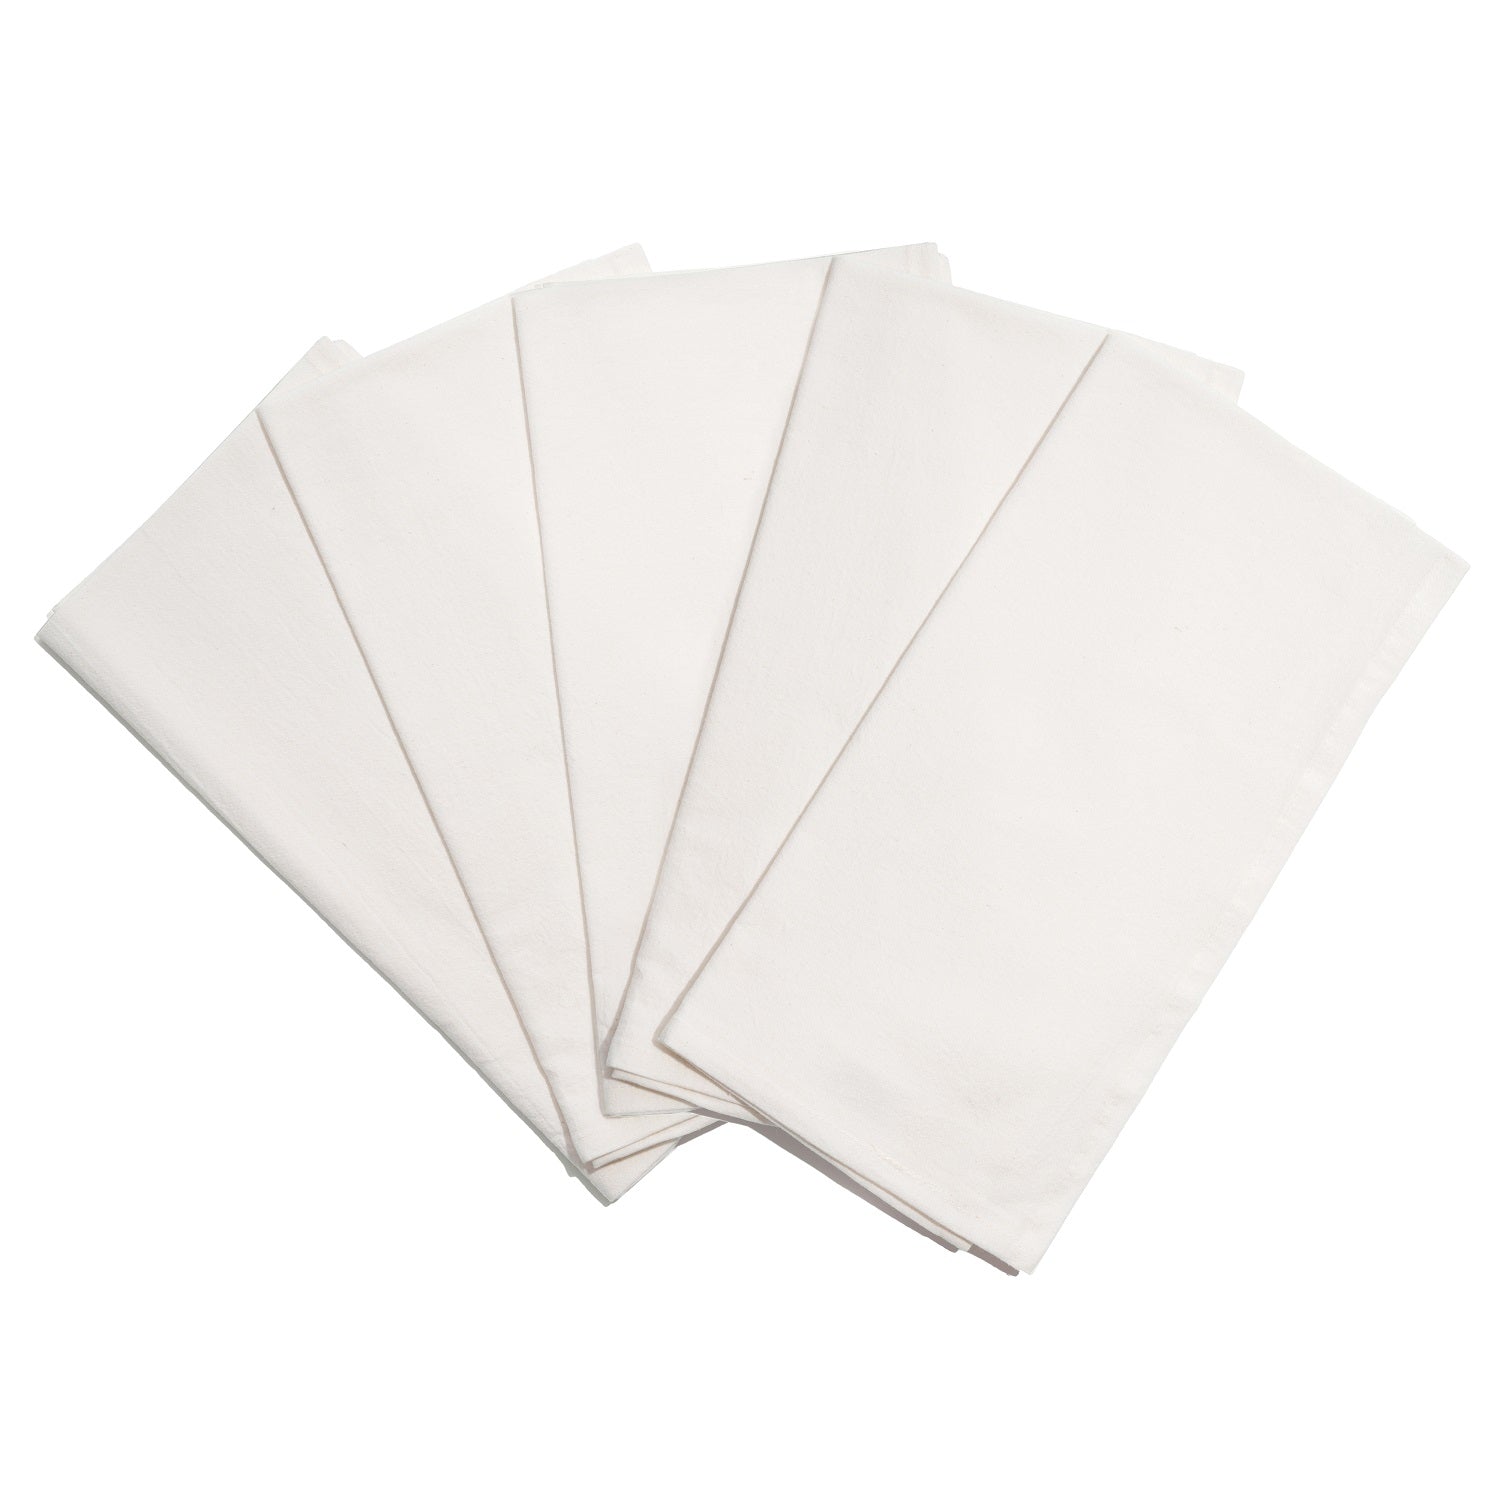 unbleached cotton flour sack towels